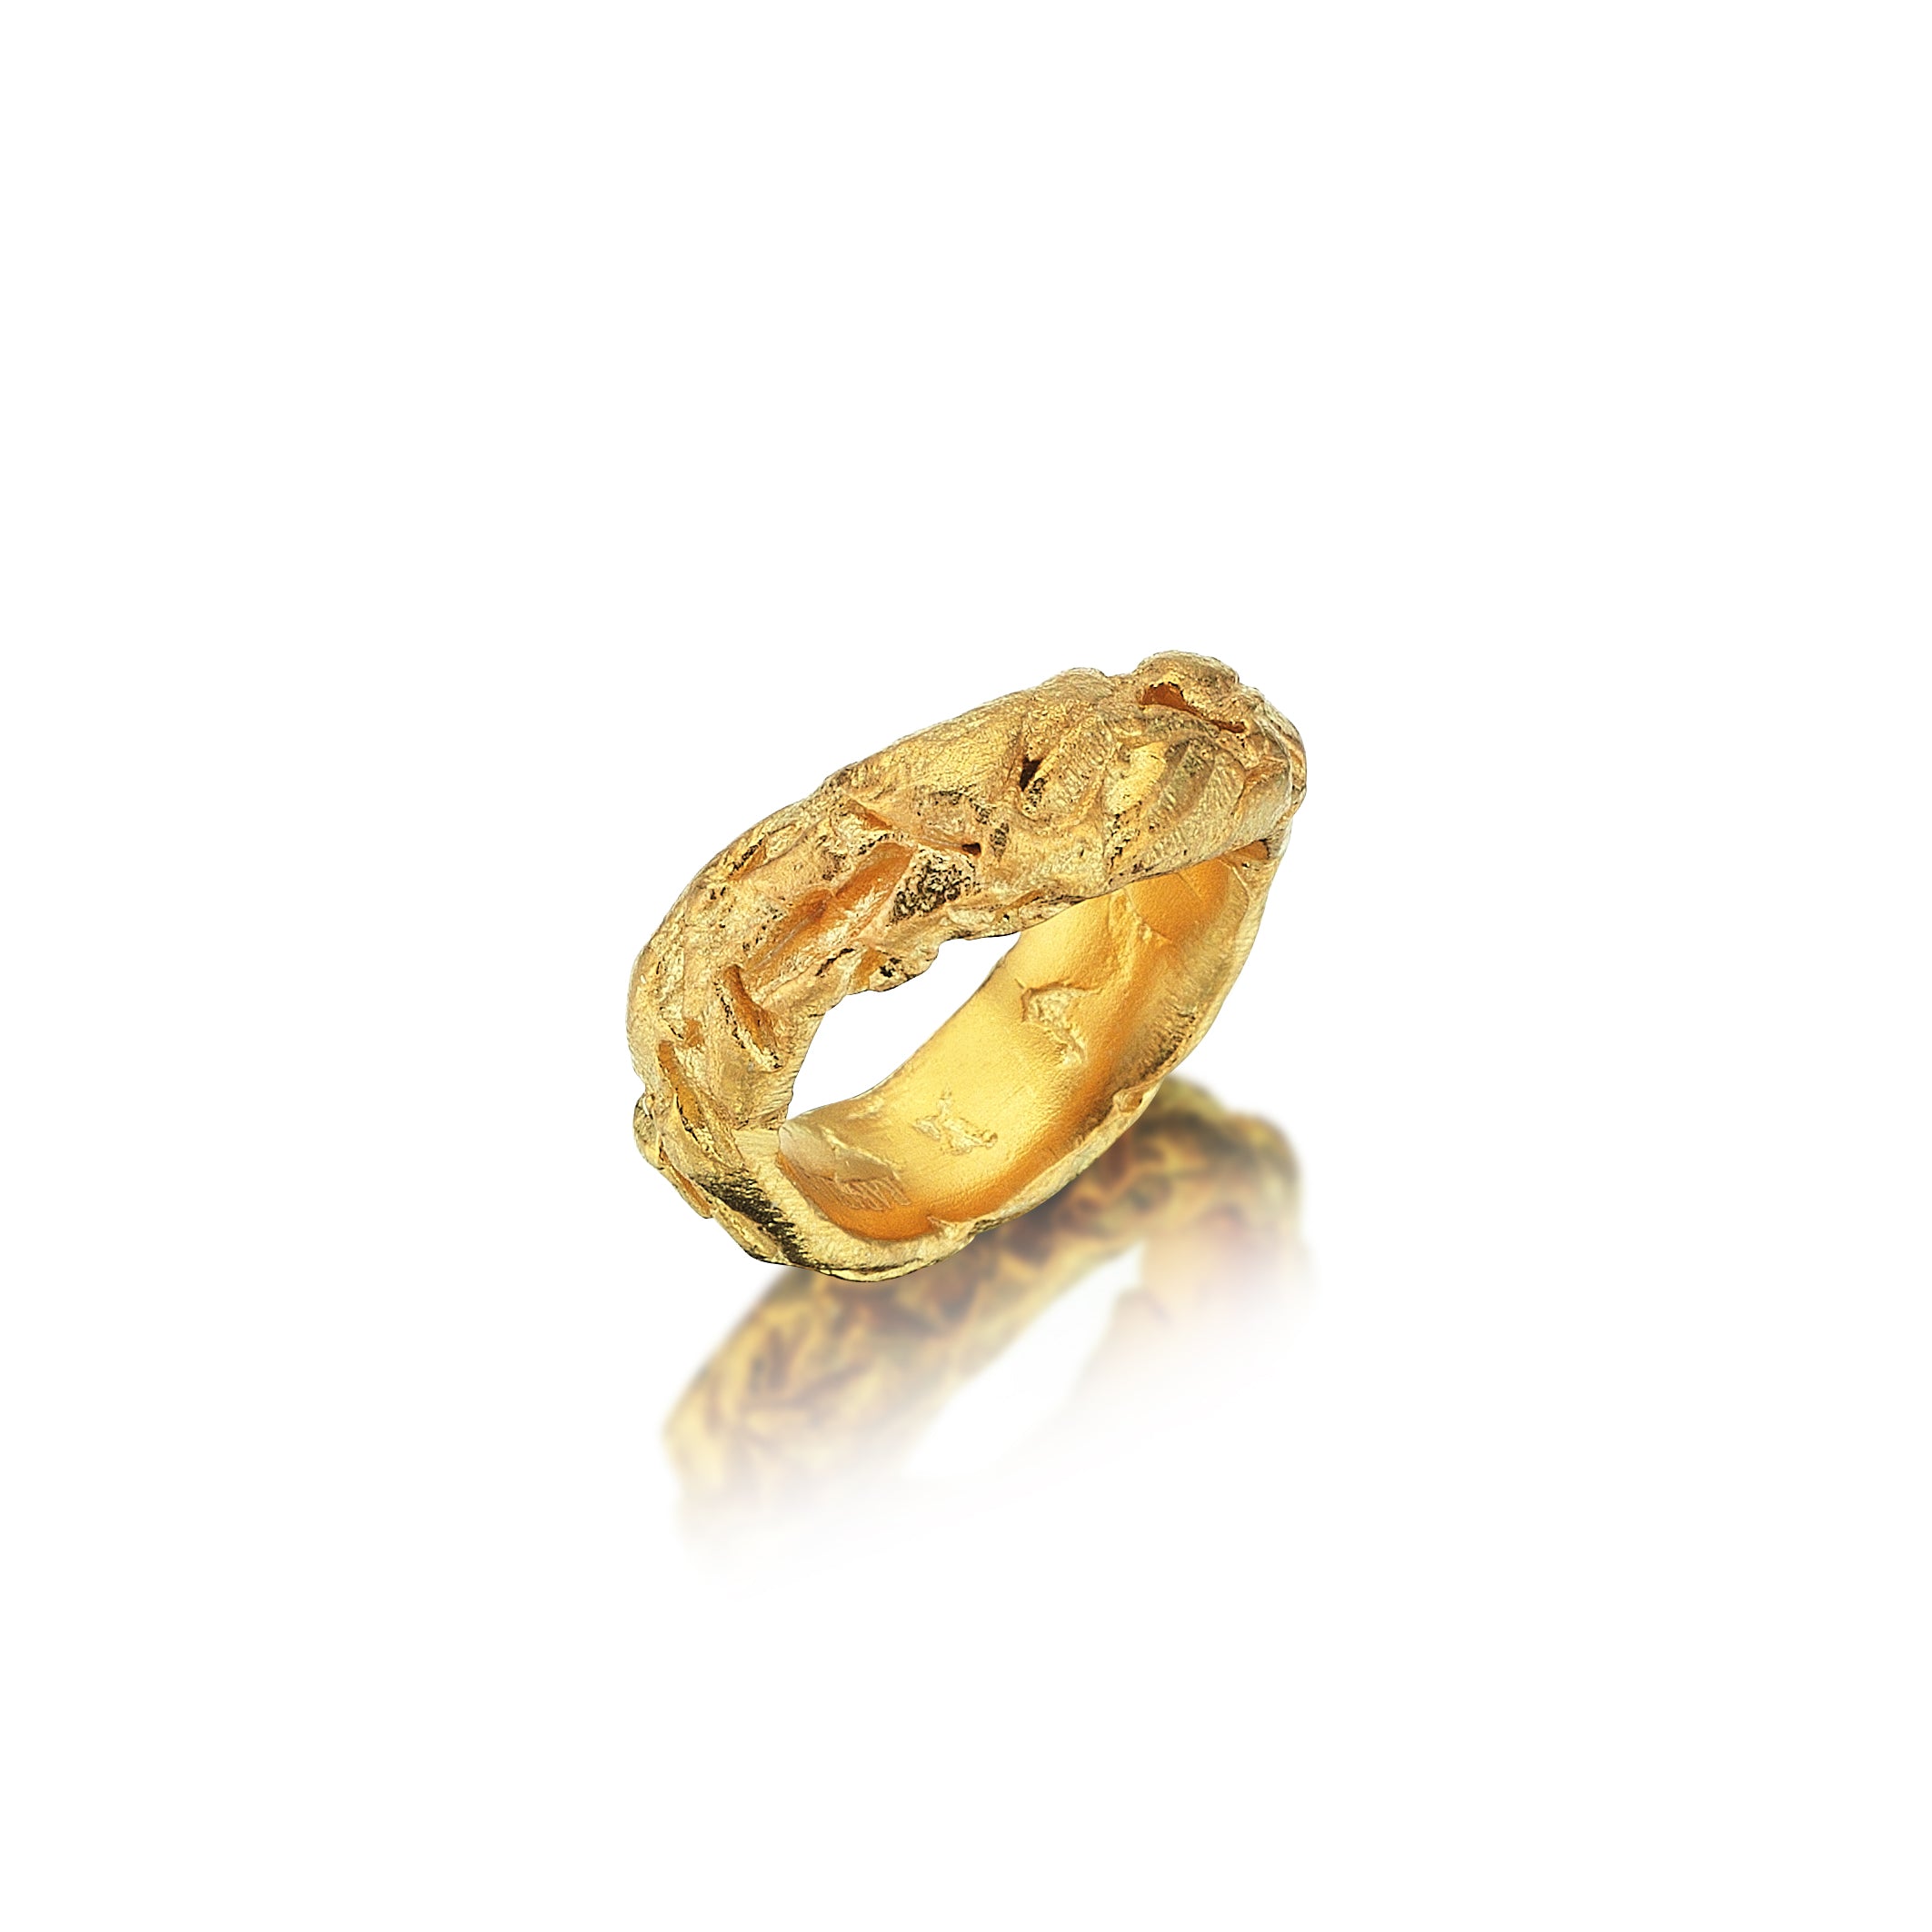 The Hephasteus Ring